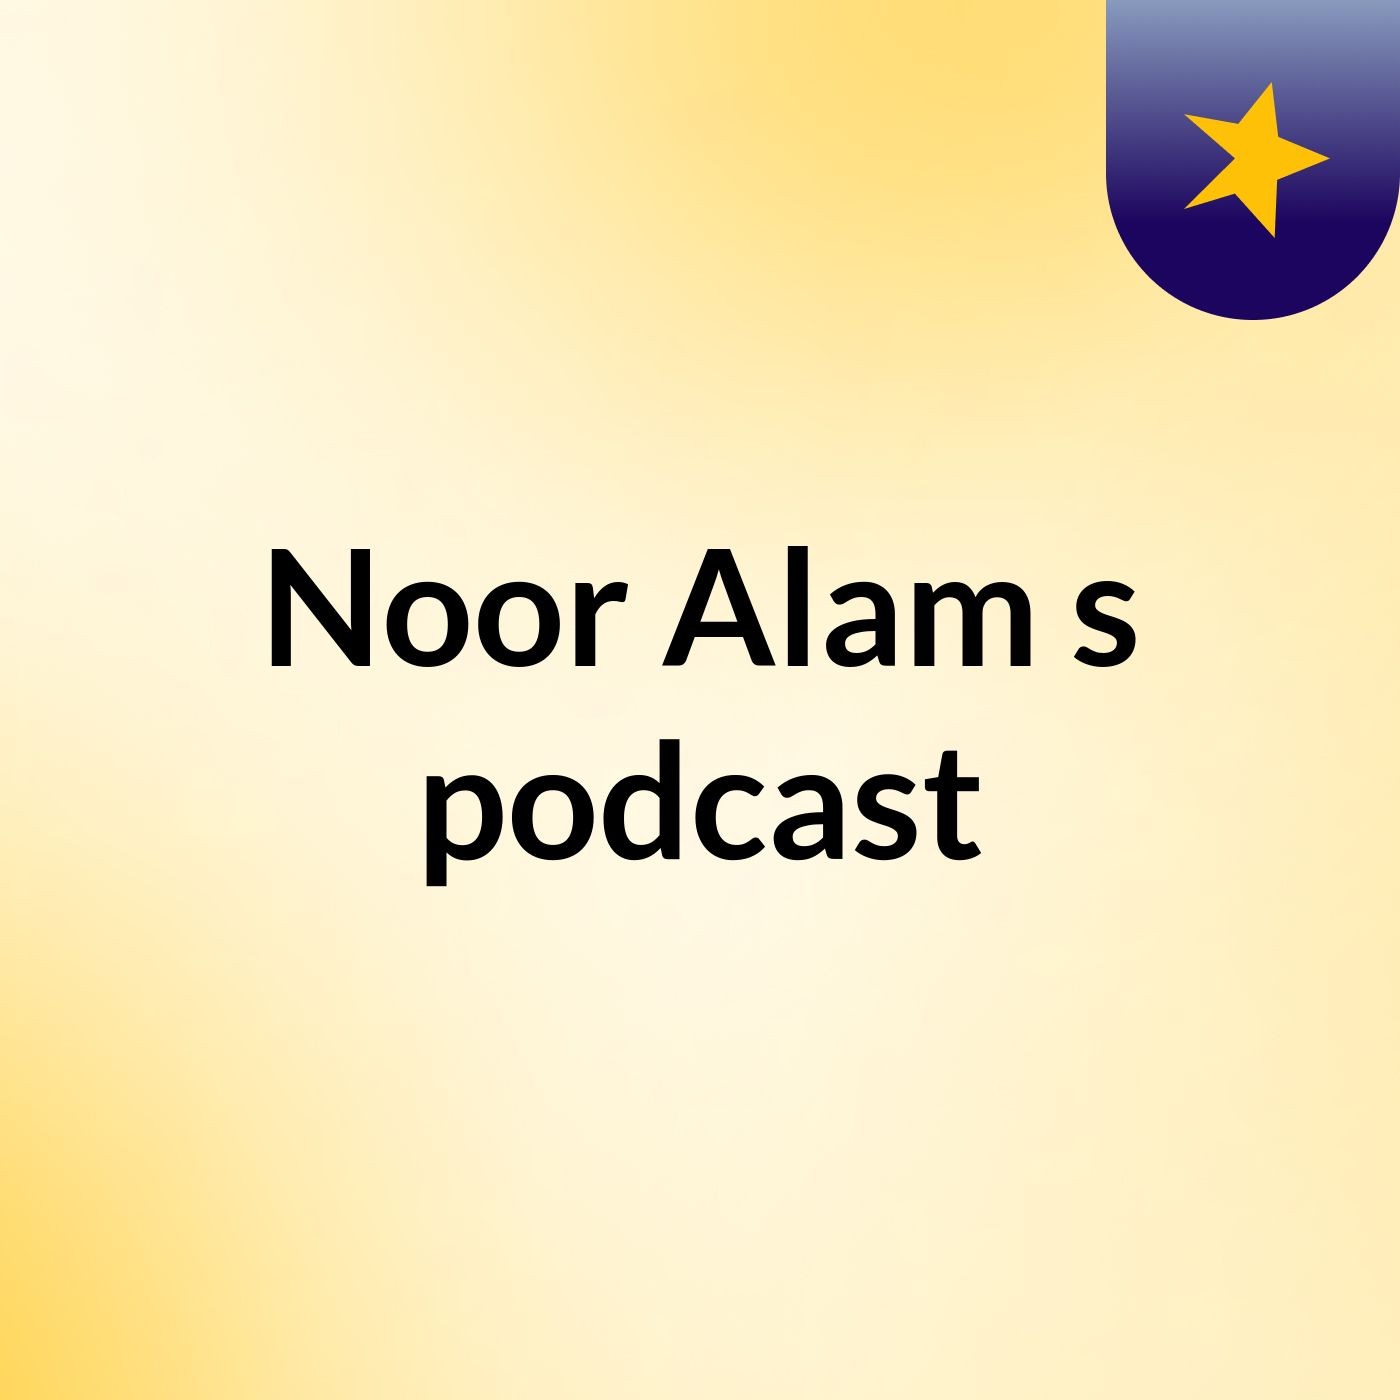 Episode 3 - Noor Alam's podcast